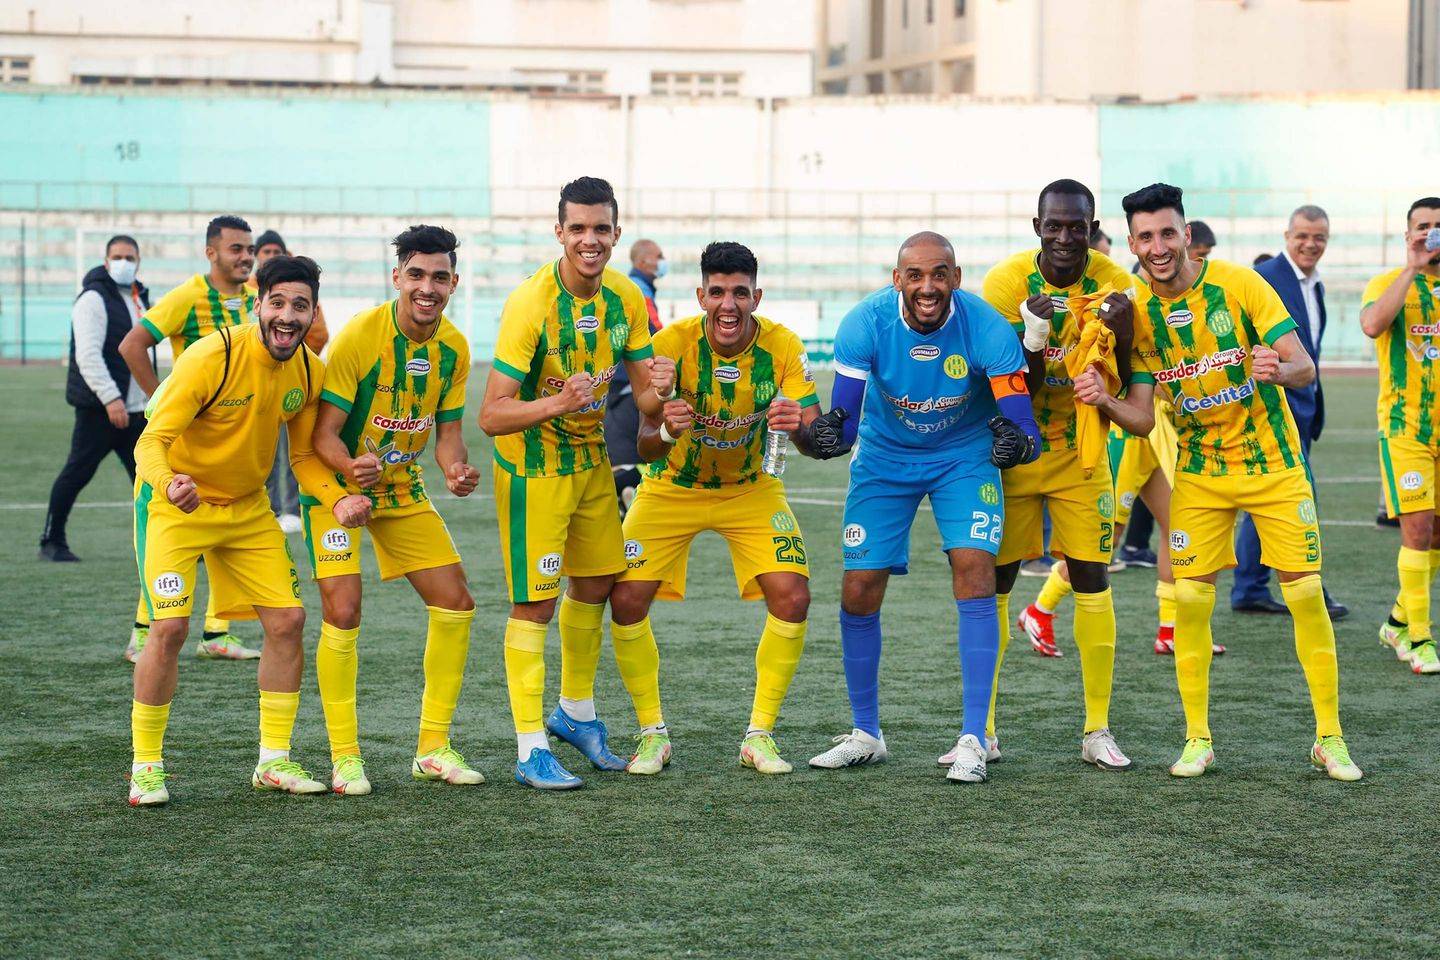 JS Kabylie, La JS Kabylie rembourse une dette colossale pour participer à Ligue des Champions, Foot Algérie